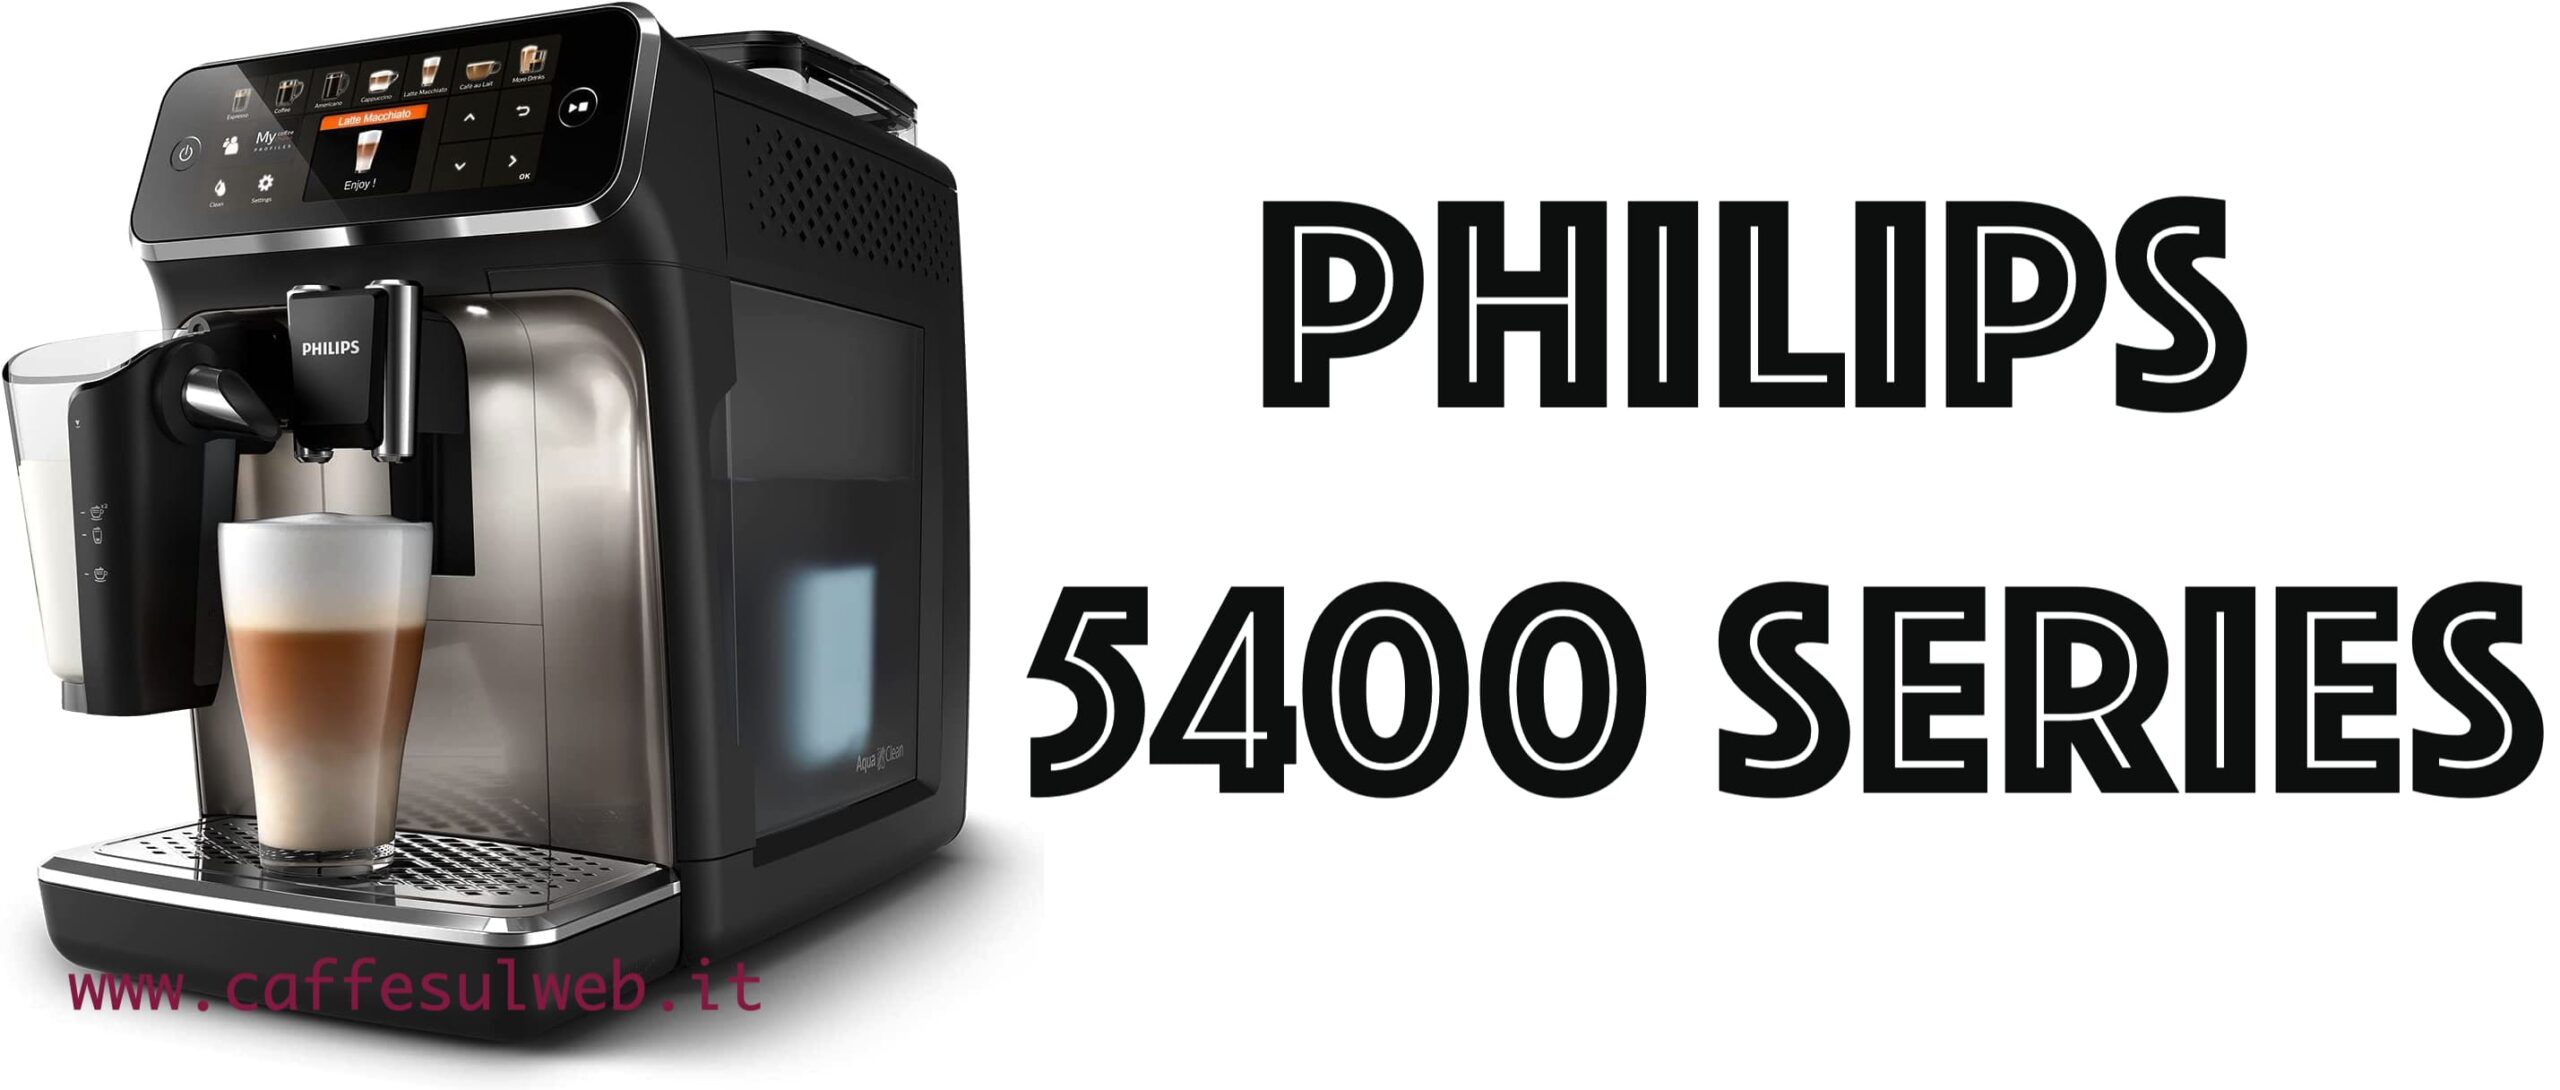 Philips 5400 Series LatteGo Recensioni Opinione Prezzo